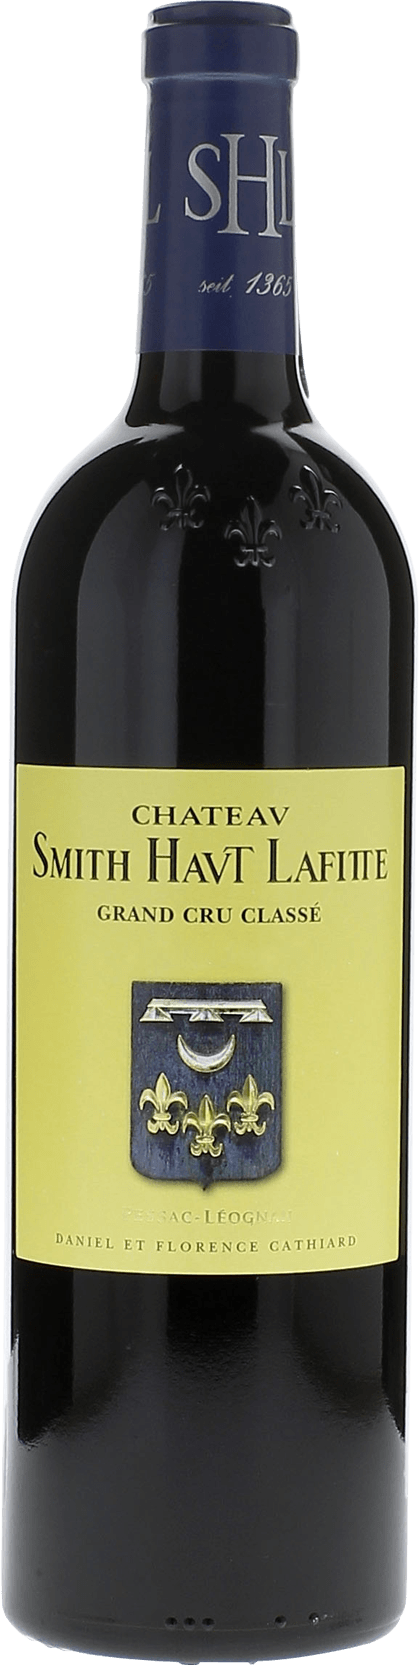 Smith haut lafitte 2018 Grand Cru Class Graves, Bordeaux rouge